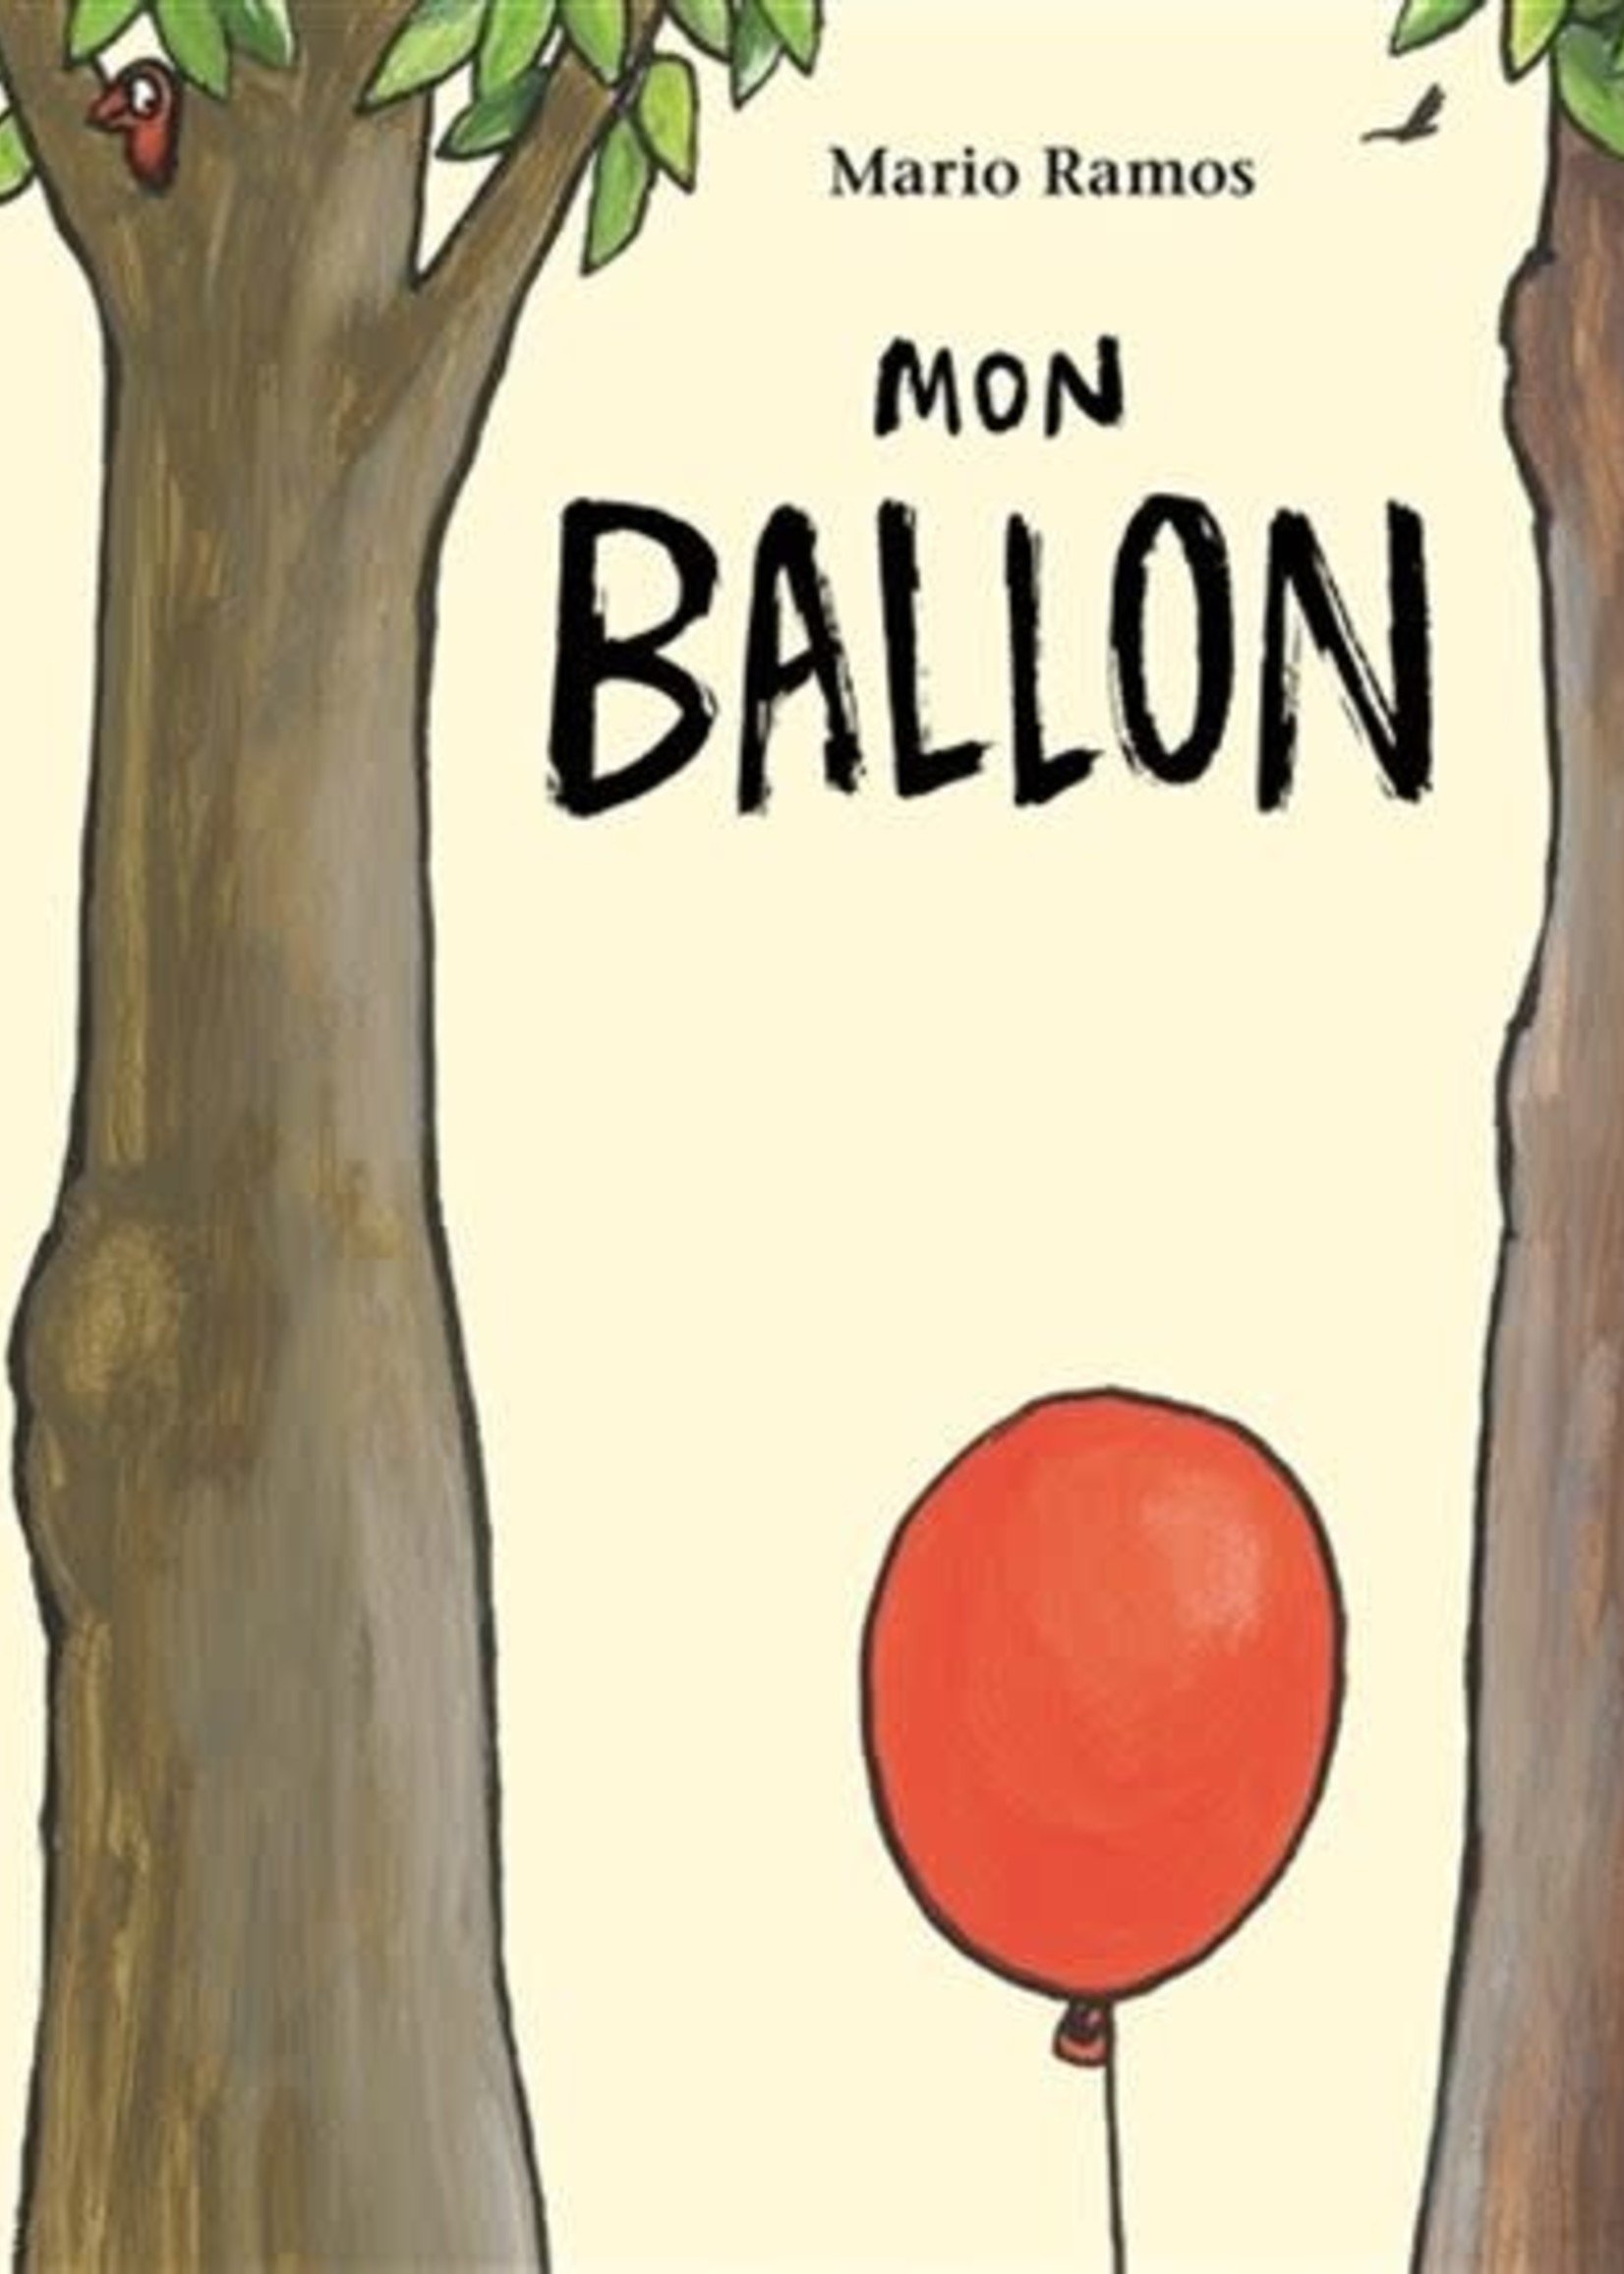 Mon ballon by Mario Ramos